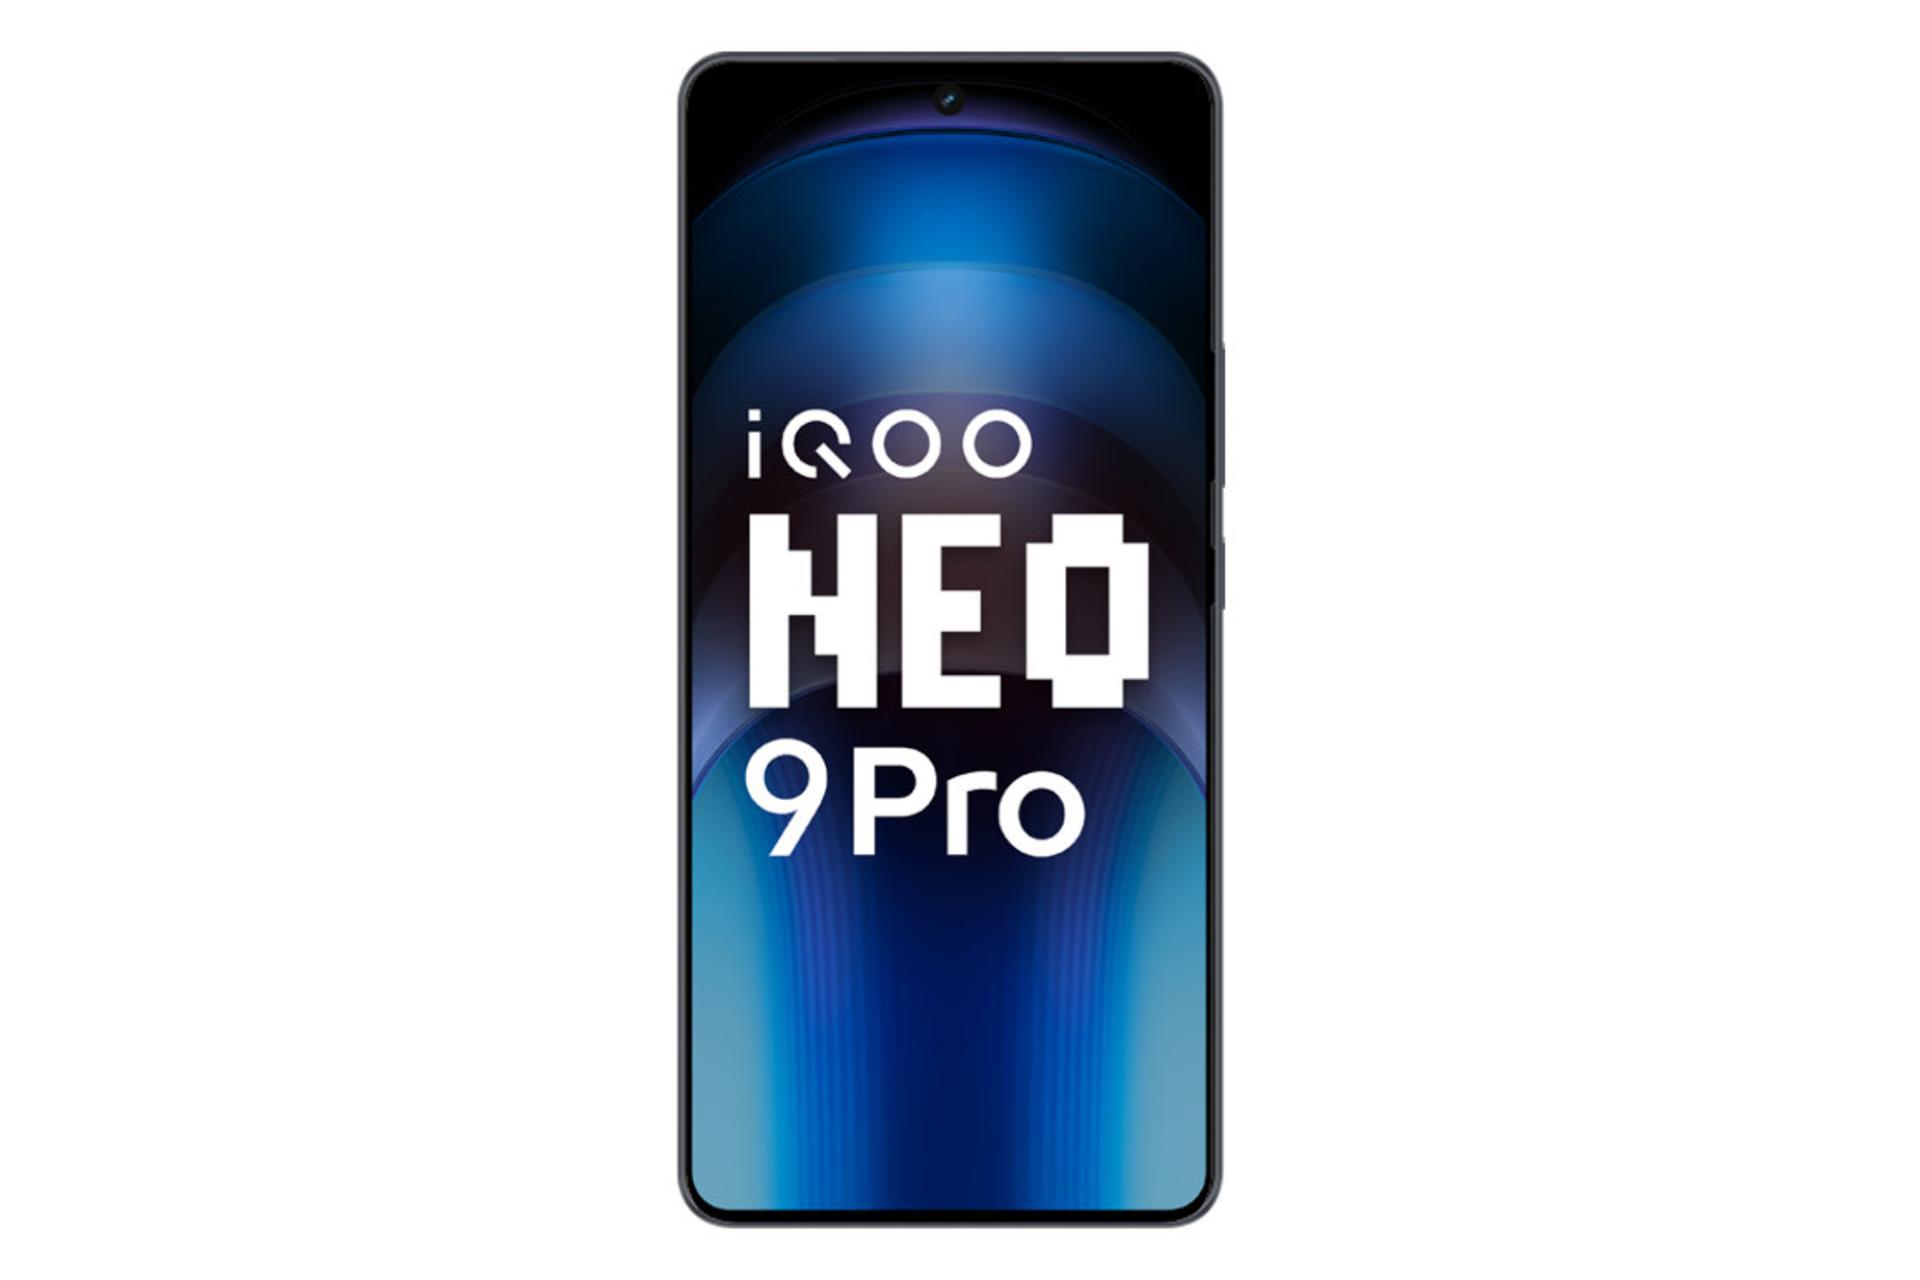 پنل جلو و صفحه نمایش گوشی موبایل iQOO Neo9 پرو ویوو نسخه گلوبال مشکی / vivo iQOO Neo9 Pro Global